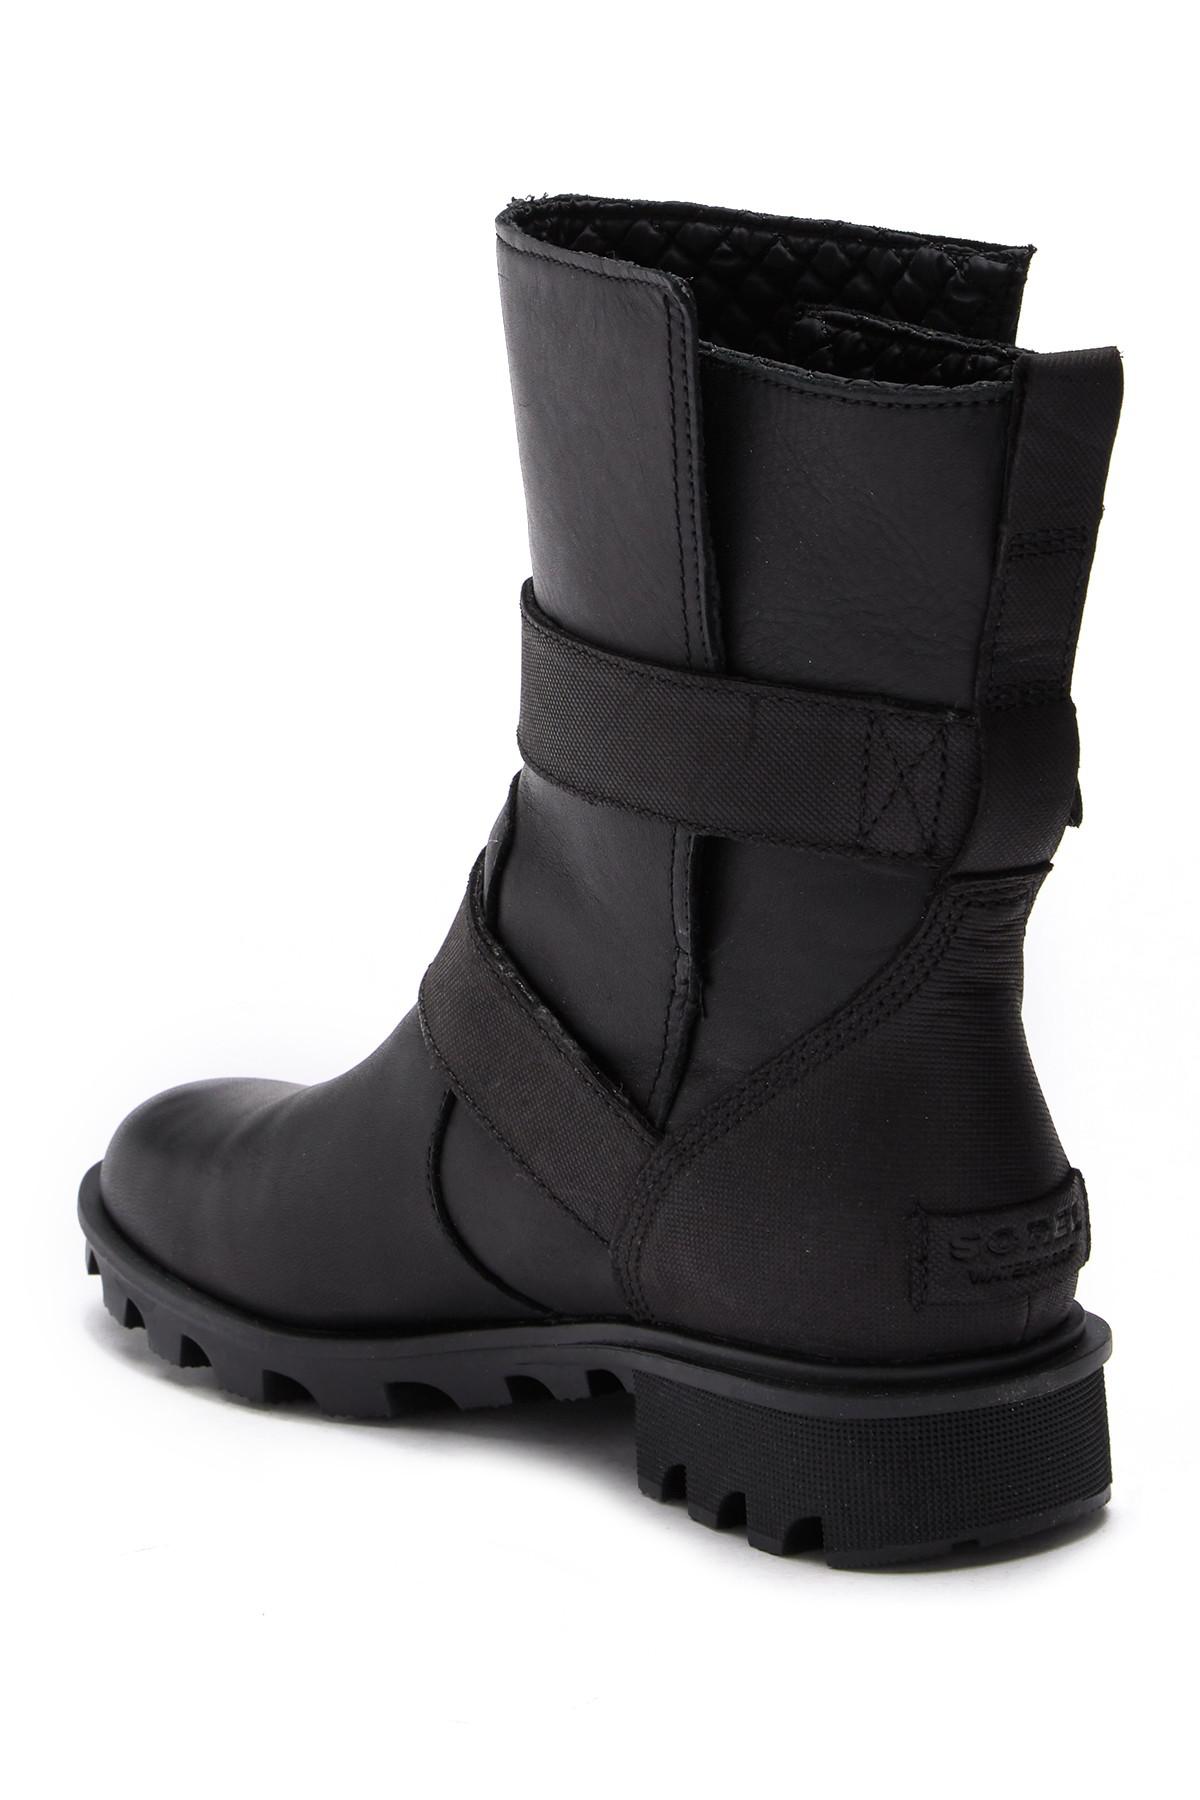 Lyst Sorel Phoenix Moto Waterproof Leather Boot in Black